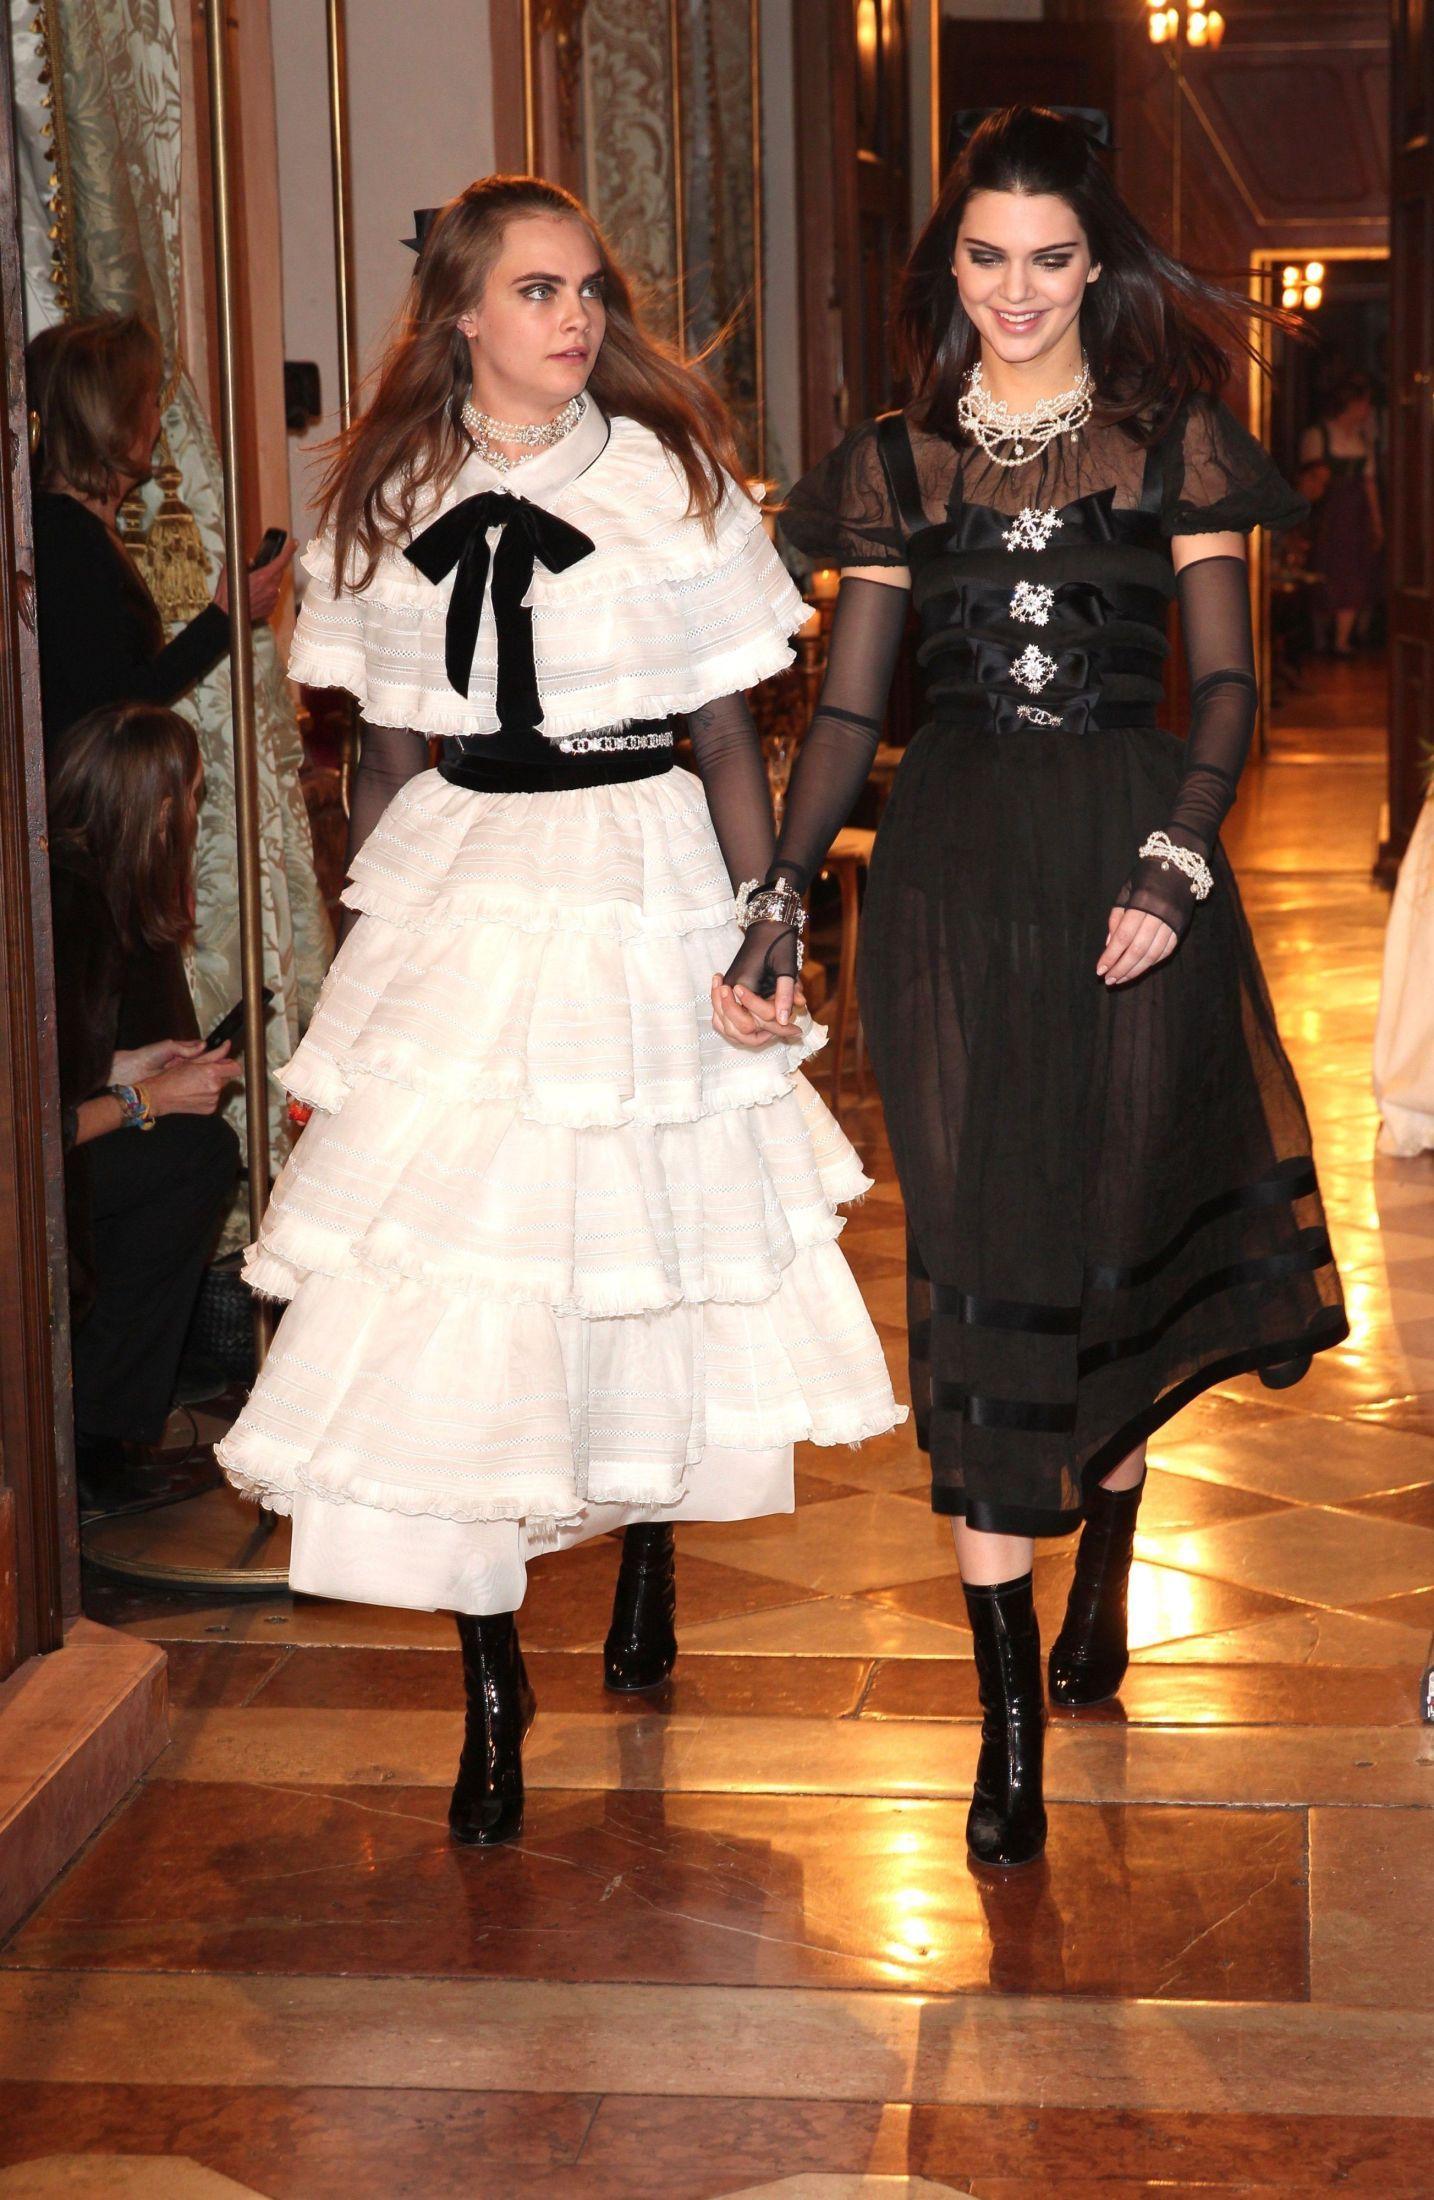 HÅND I HÅND: Venninnene Cara Delevingne (22) og Kendall Jenner (19) avslutter Chanel sin Pre-Fall 2015 visning hånd i hånd, iført luksus kjoler. Foto: Getty Images